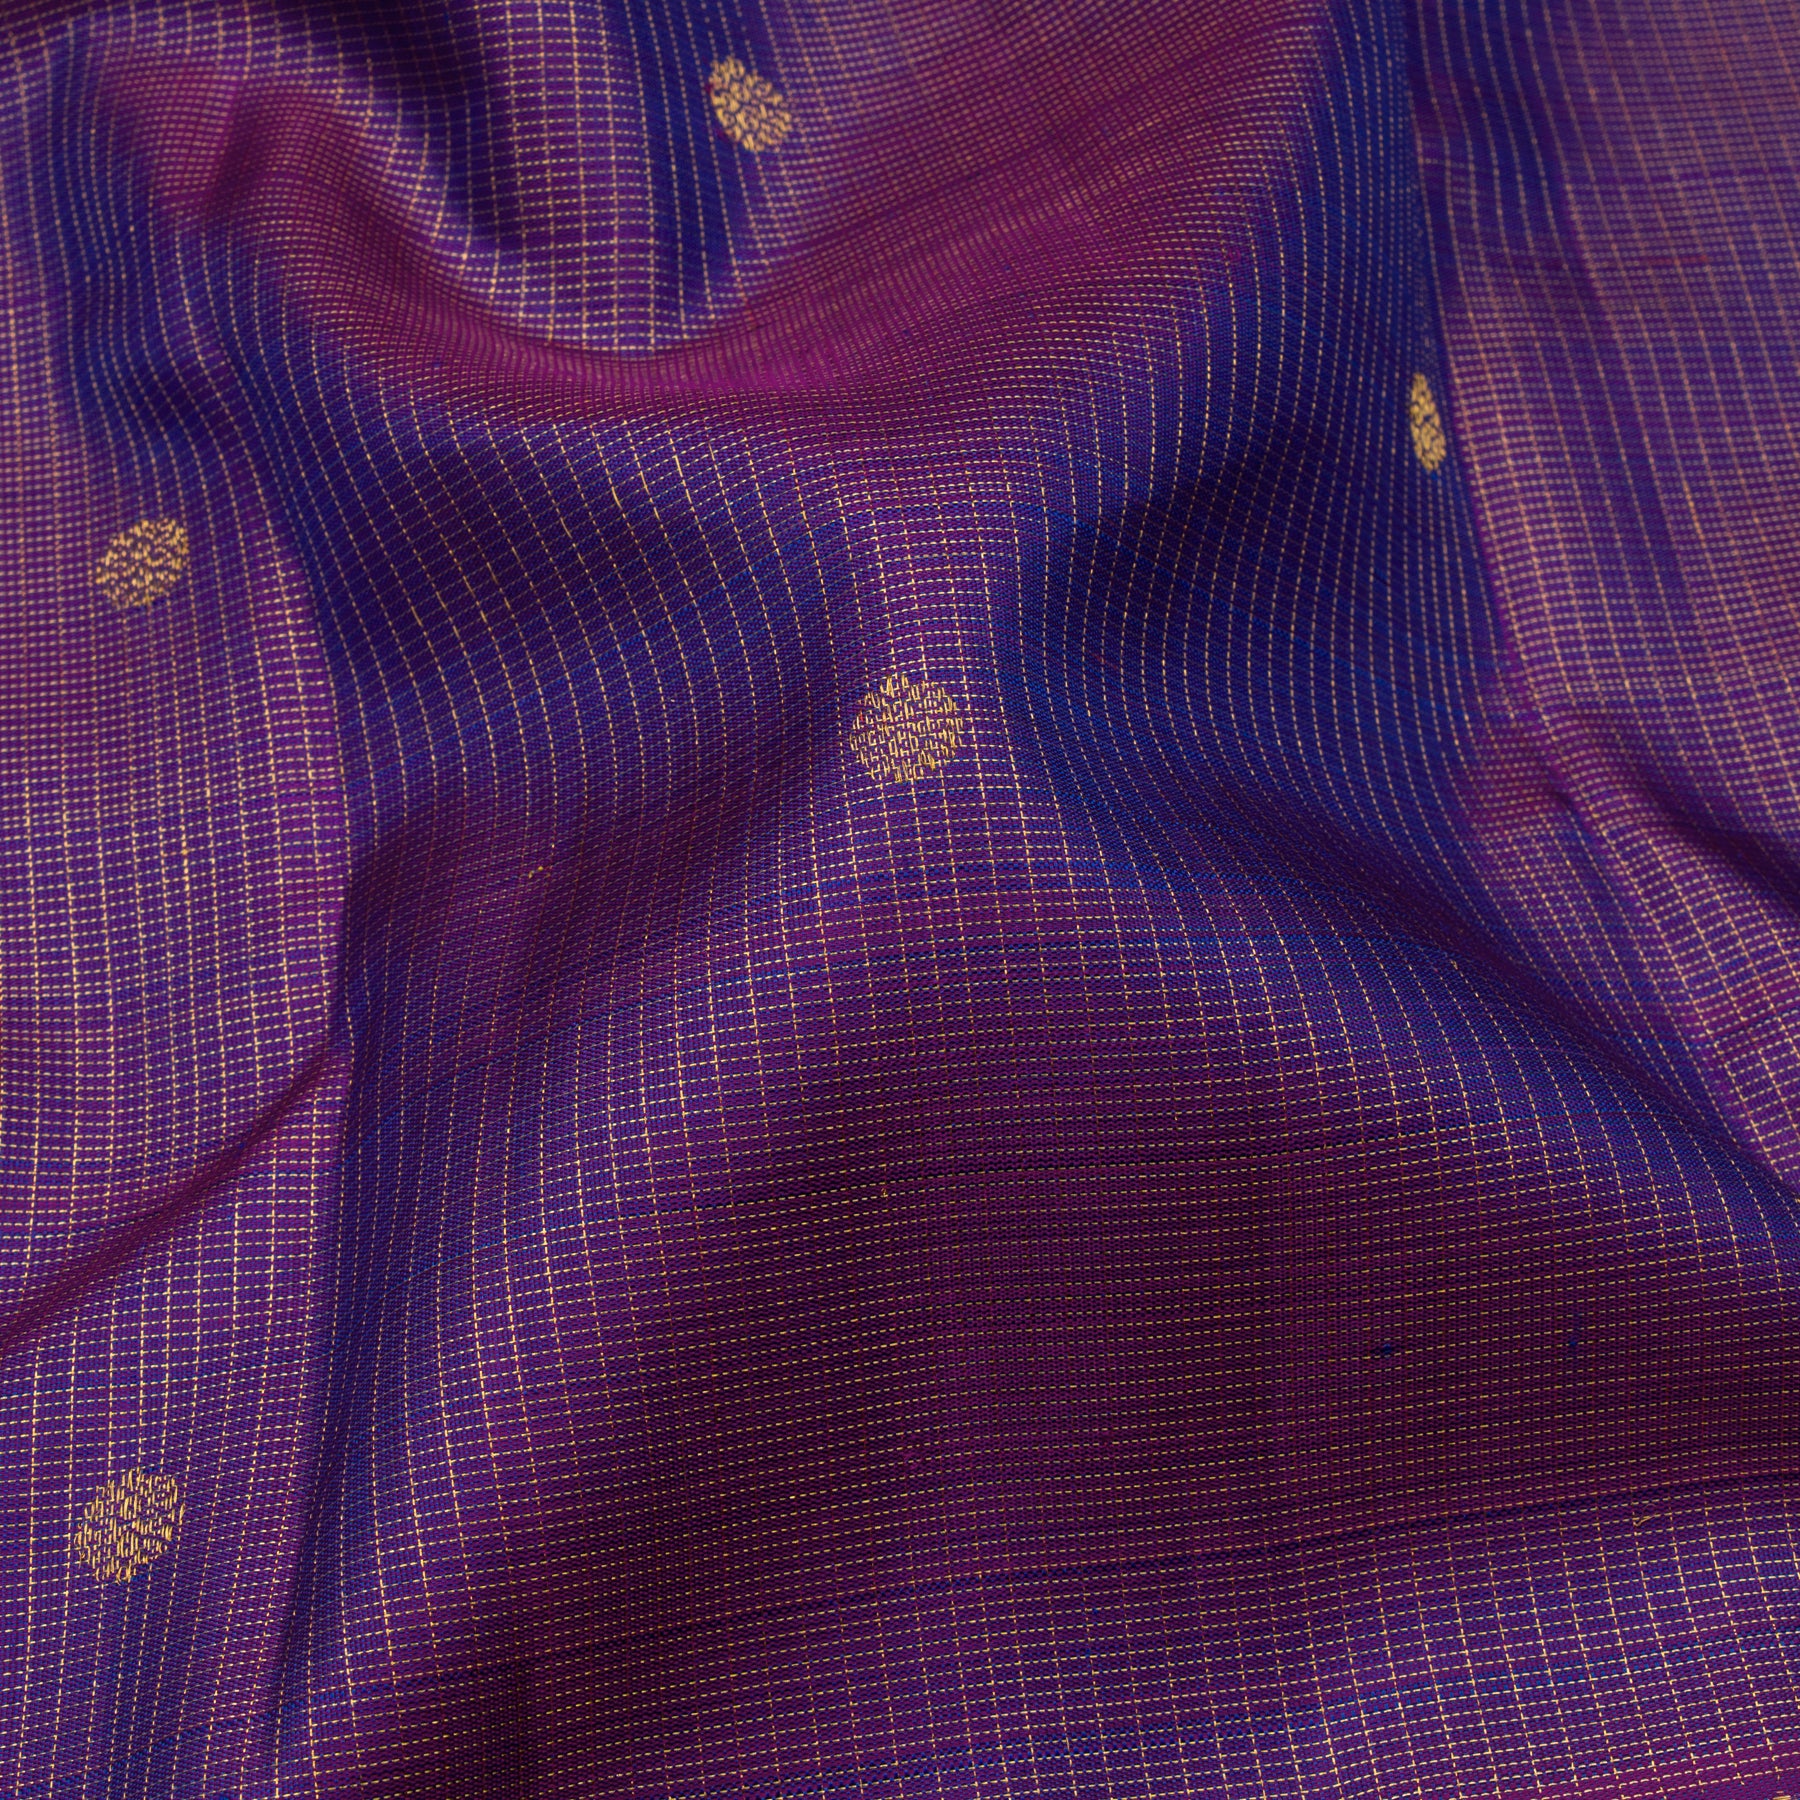 Kanakavalli Kanjivaram Silk Sari 23-110-HS001-12295 - Fabric View